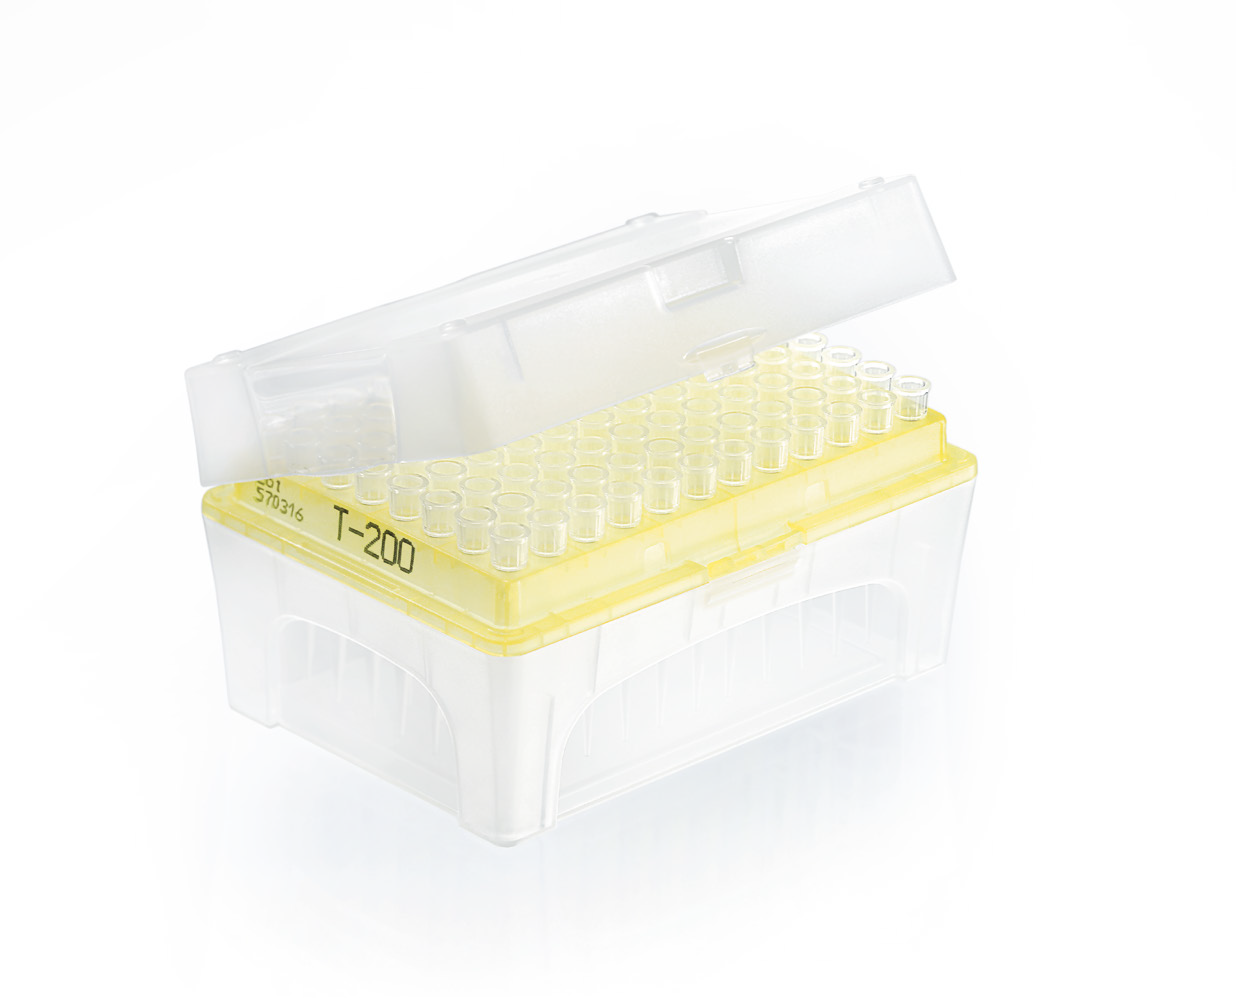 Filter tips ULR rack DNA-/RNase-free IVD TipBox 2 - 20 μl, PCK=480